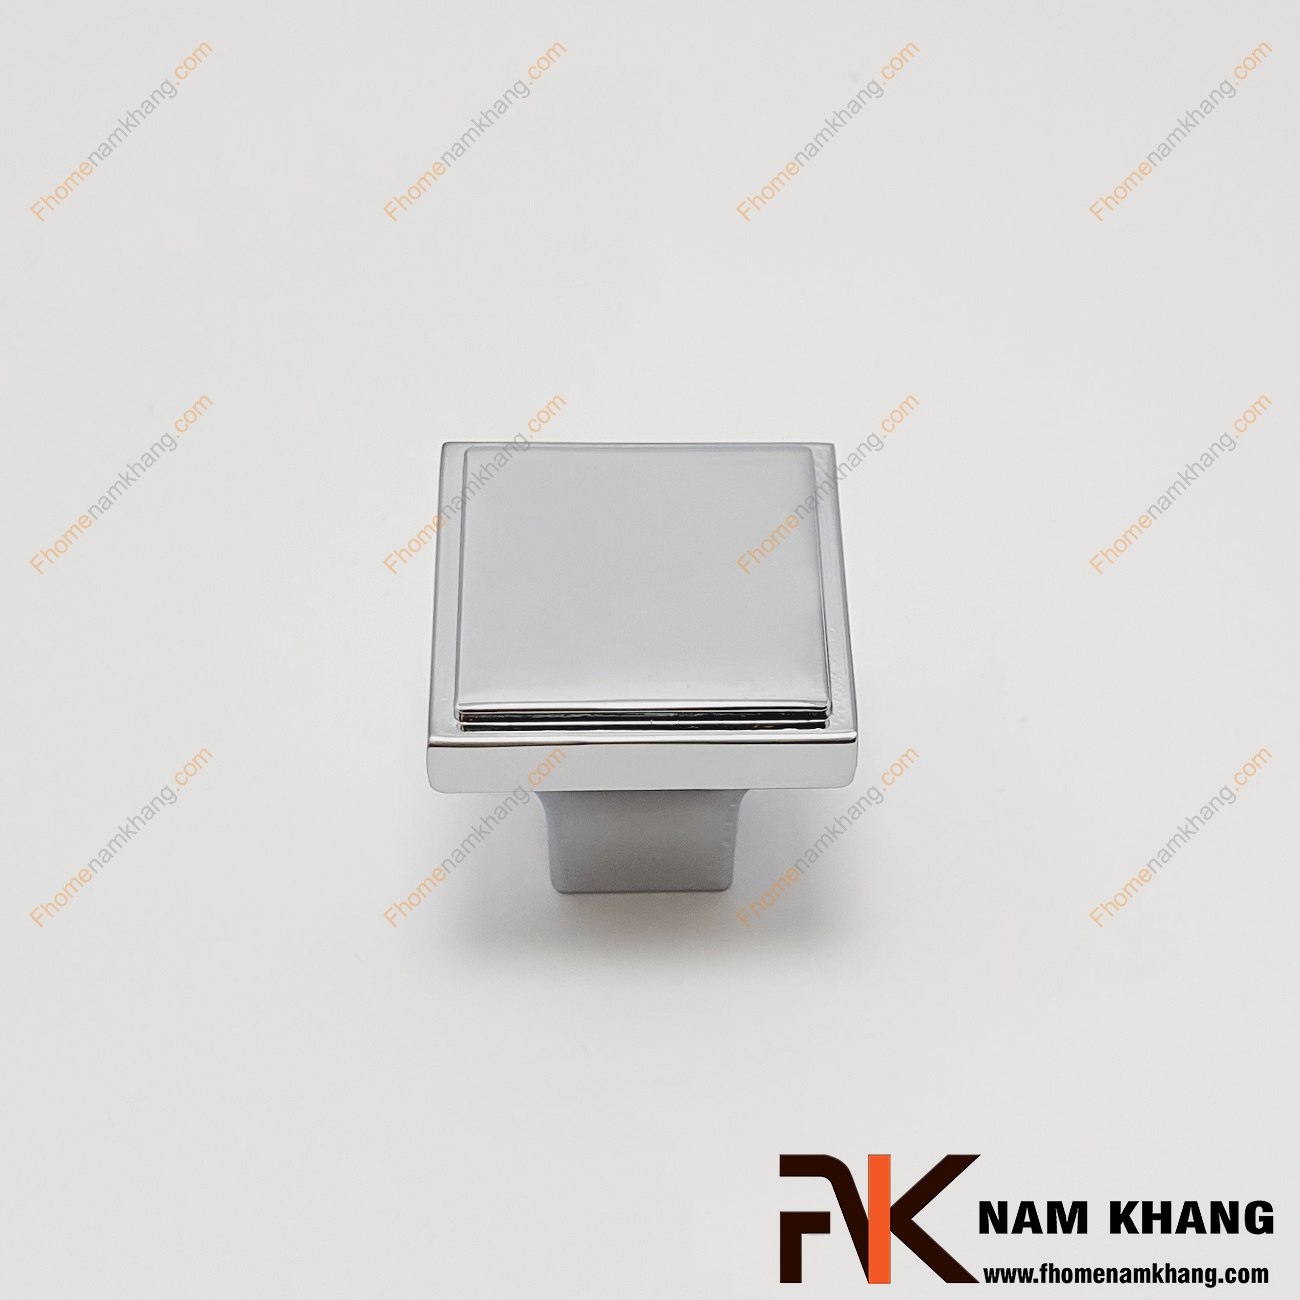 Núm cửa tủ vuông màu trắng bạc NK026-B, núm cửa tủ dạng vuông khối được lên màu trên chất liệu hợp kim cao cấp. Đây là sản phẩm được sử dụng nhiều trên các dạng tủ kệ bếp, ngăn kệ, ngăn tủ và các dạng tủ quần áo,...